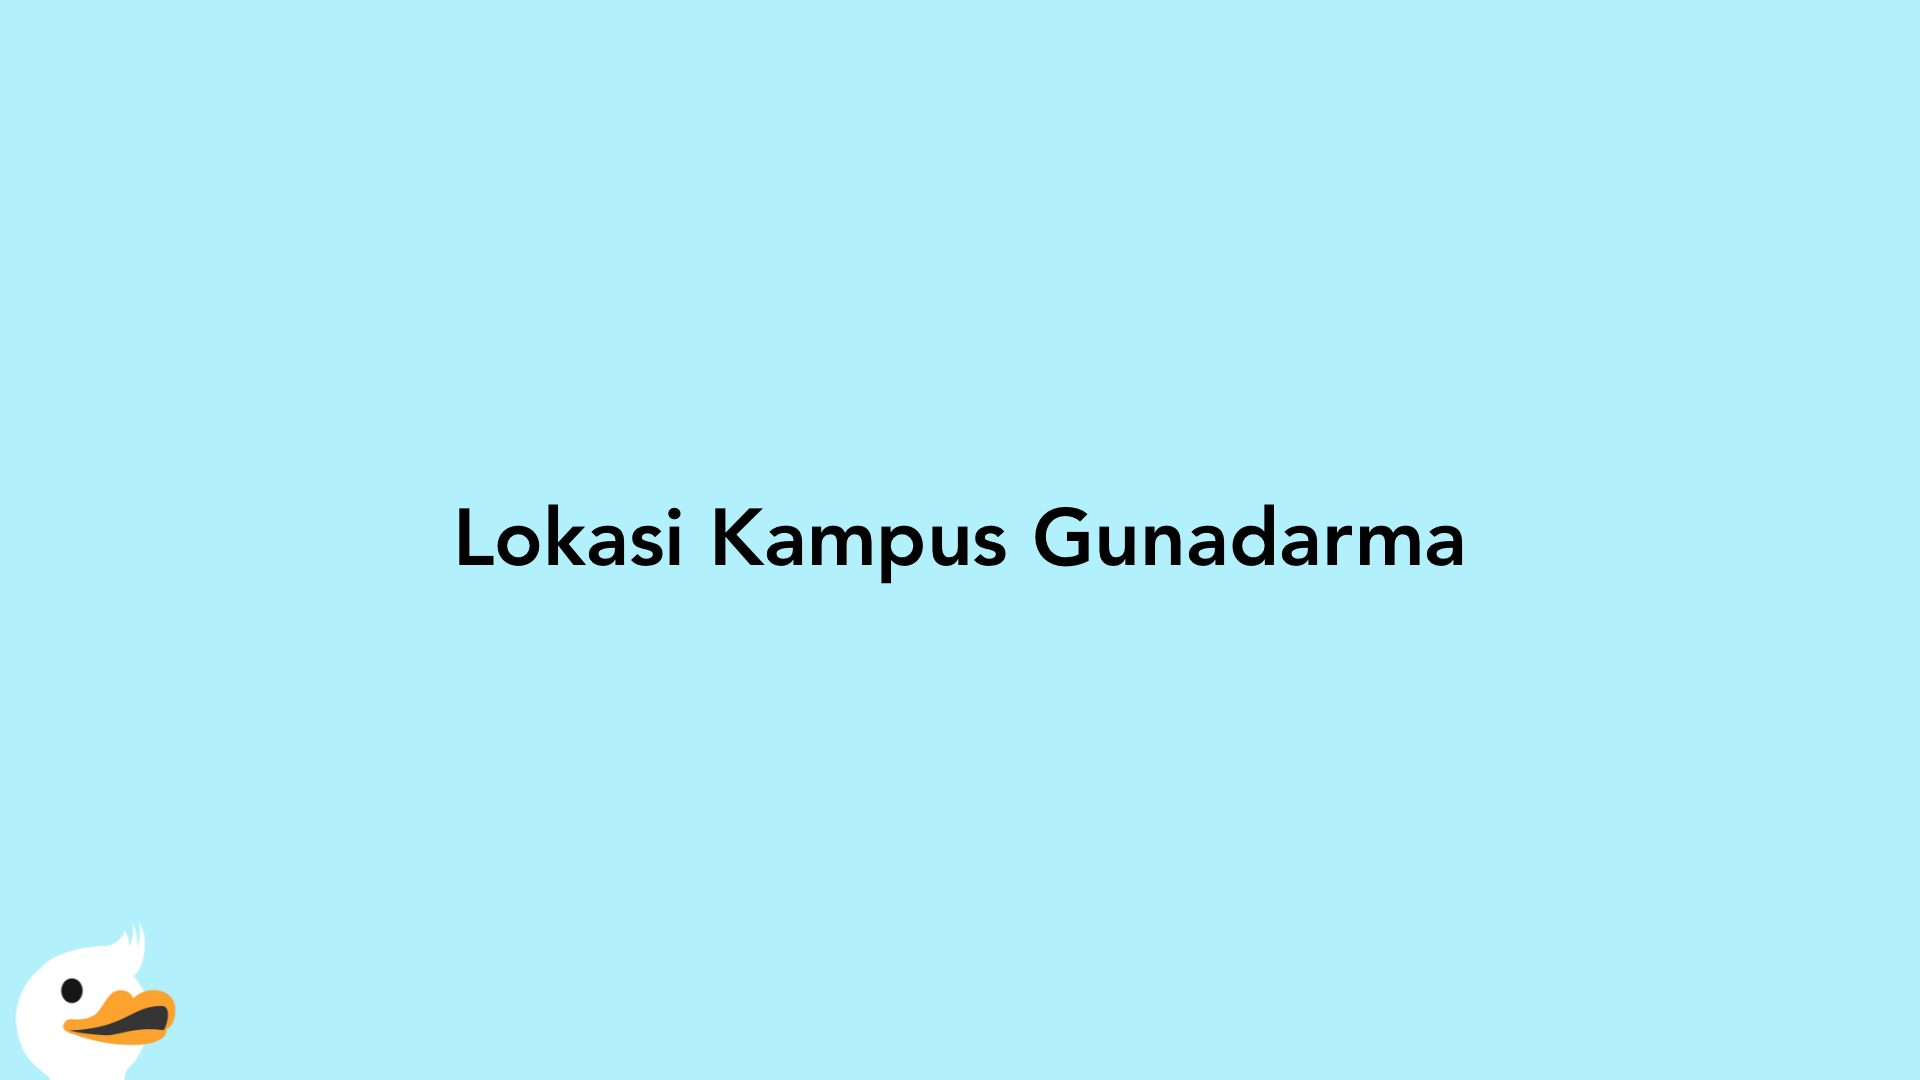 Lokasi Kampus Gunadarma